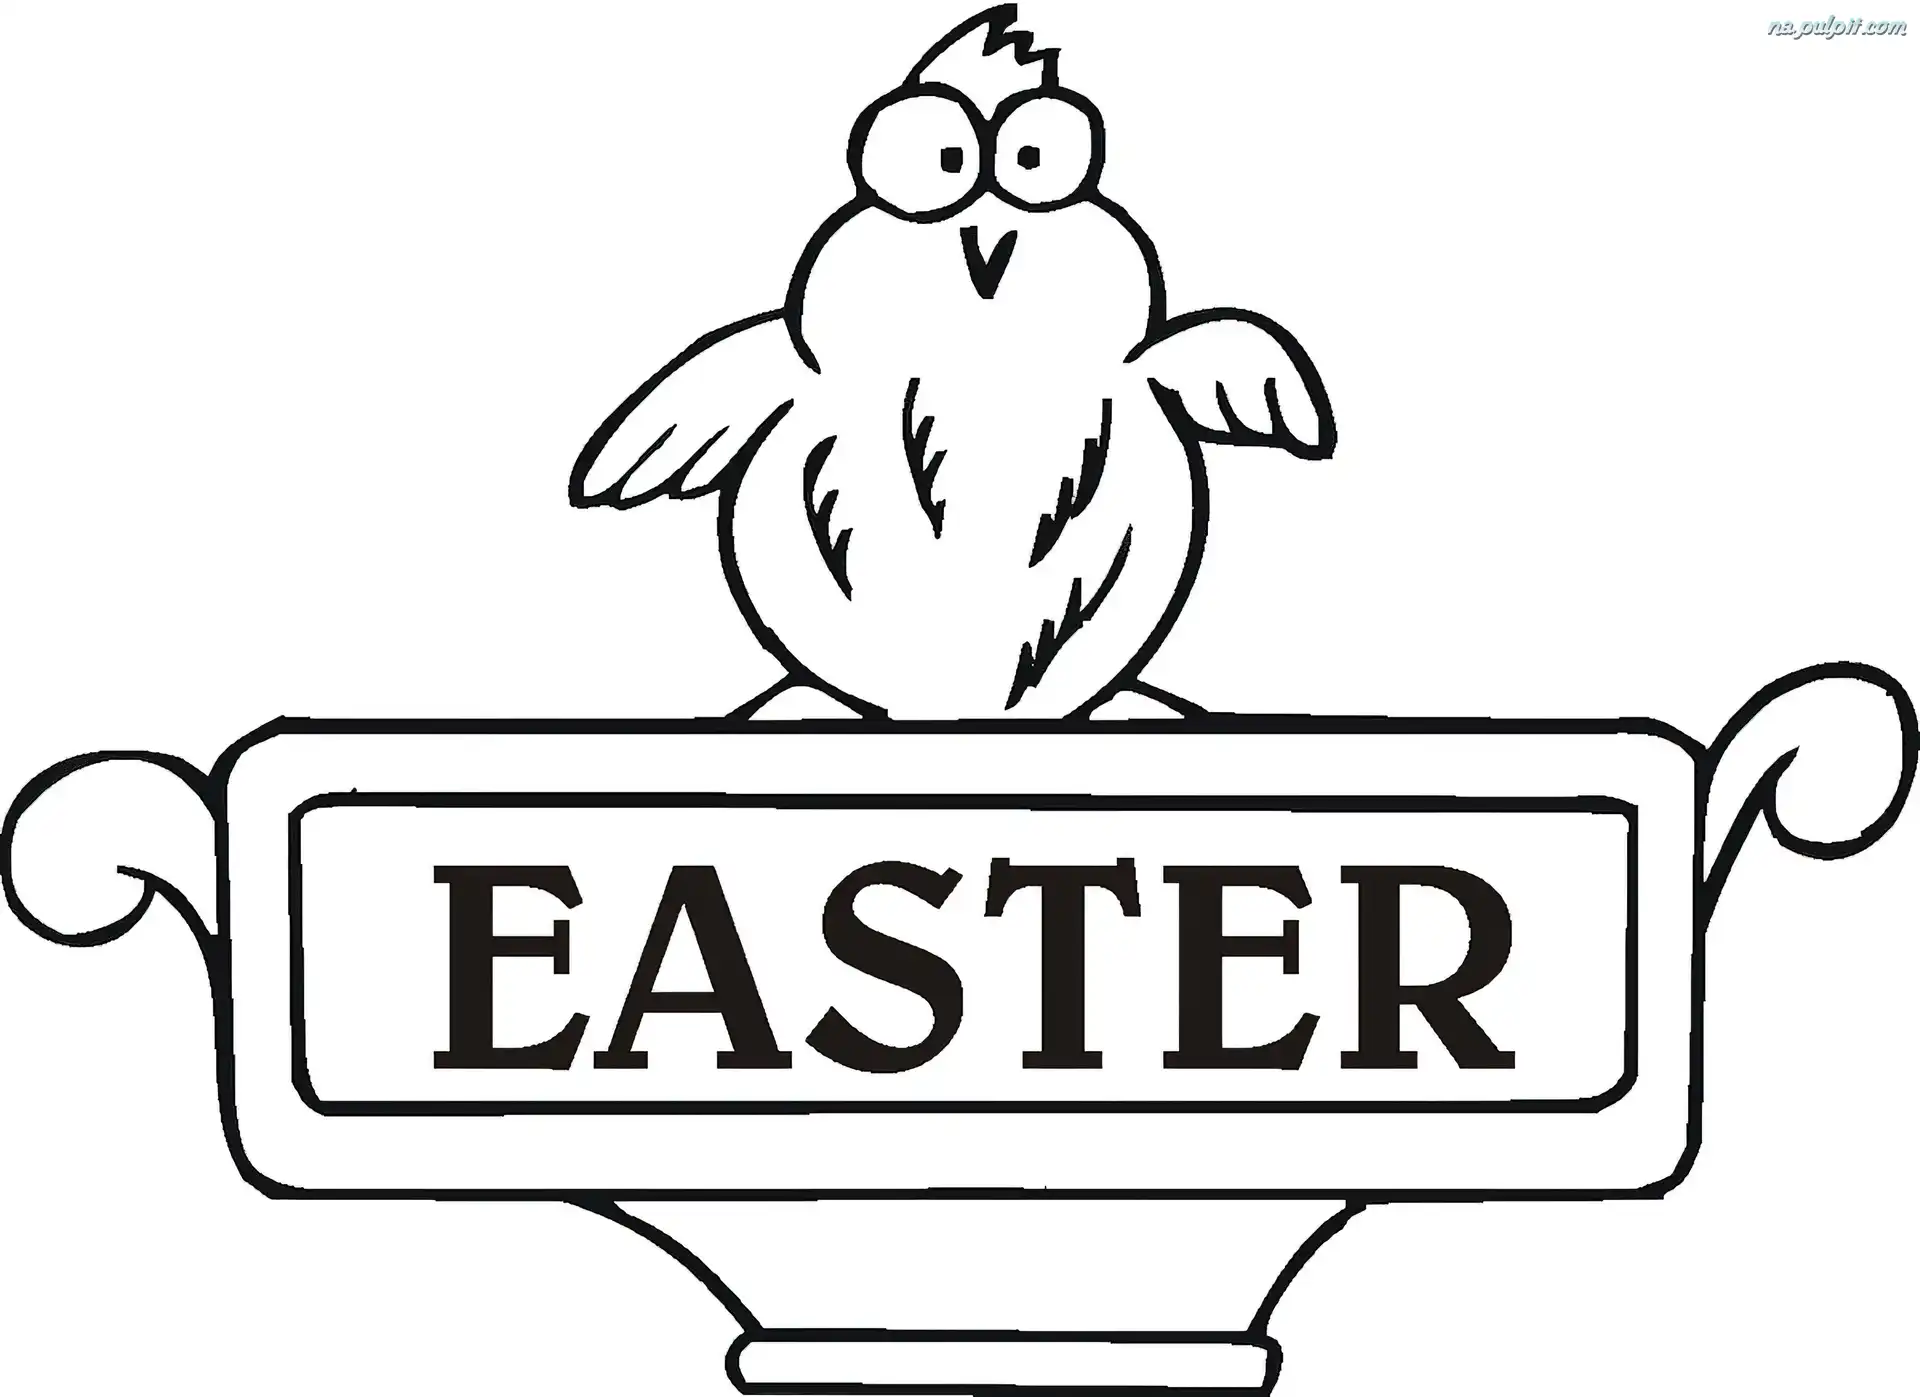 Wielkanoc, Ester